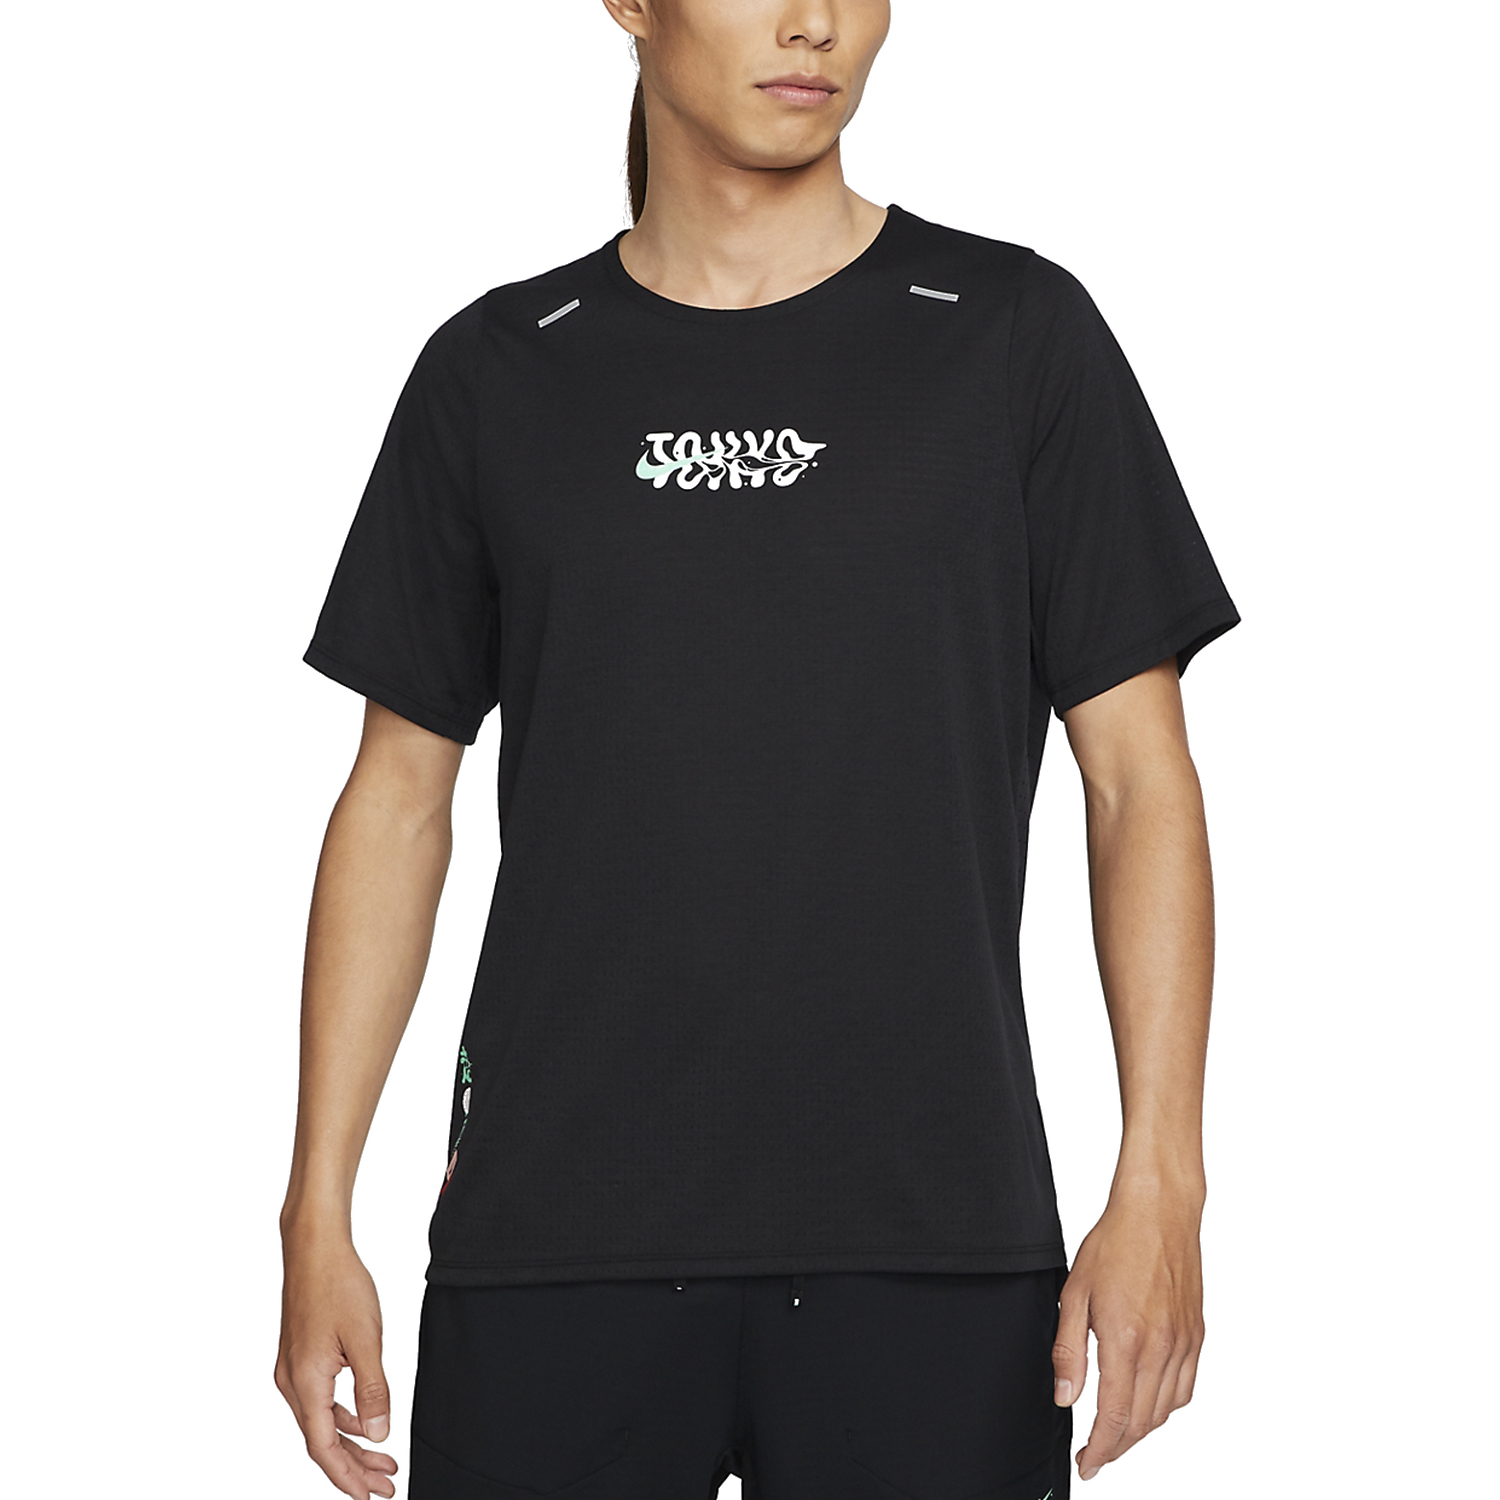 Nike 365 Men's T-Shirt - Glow